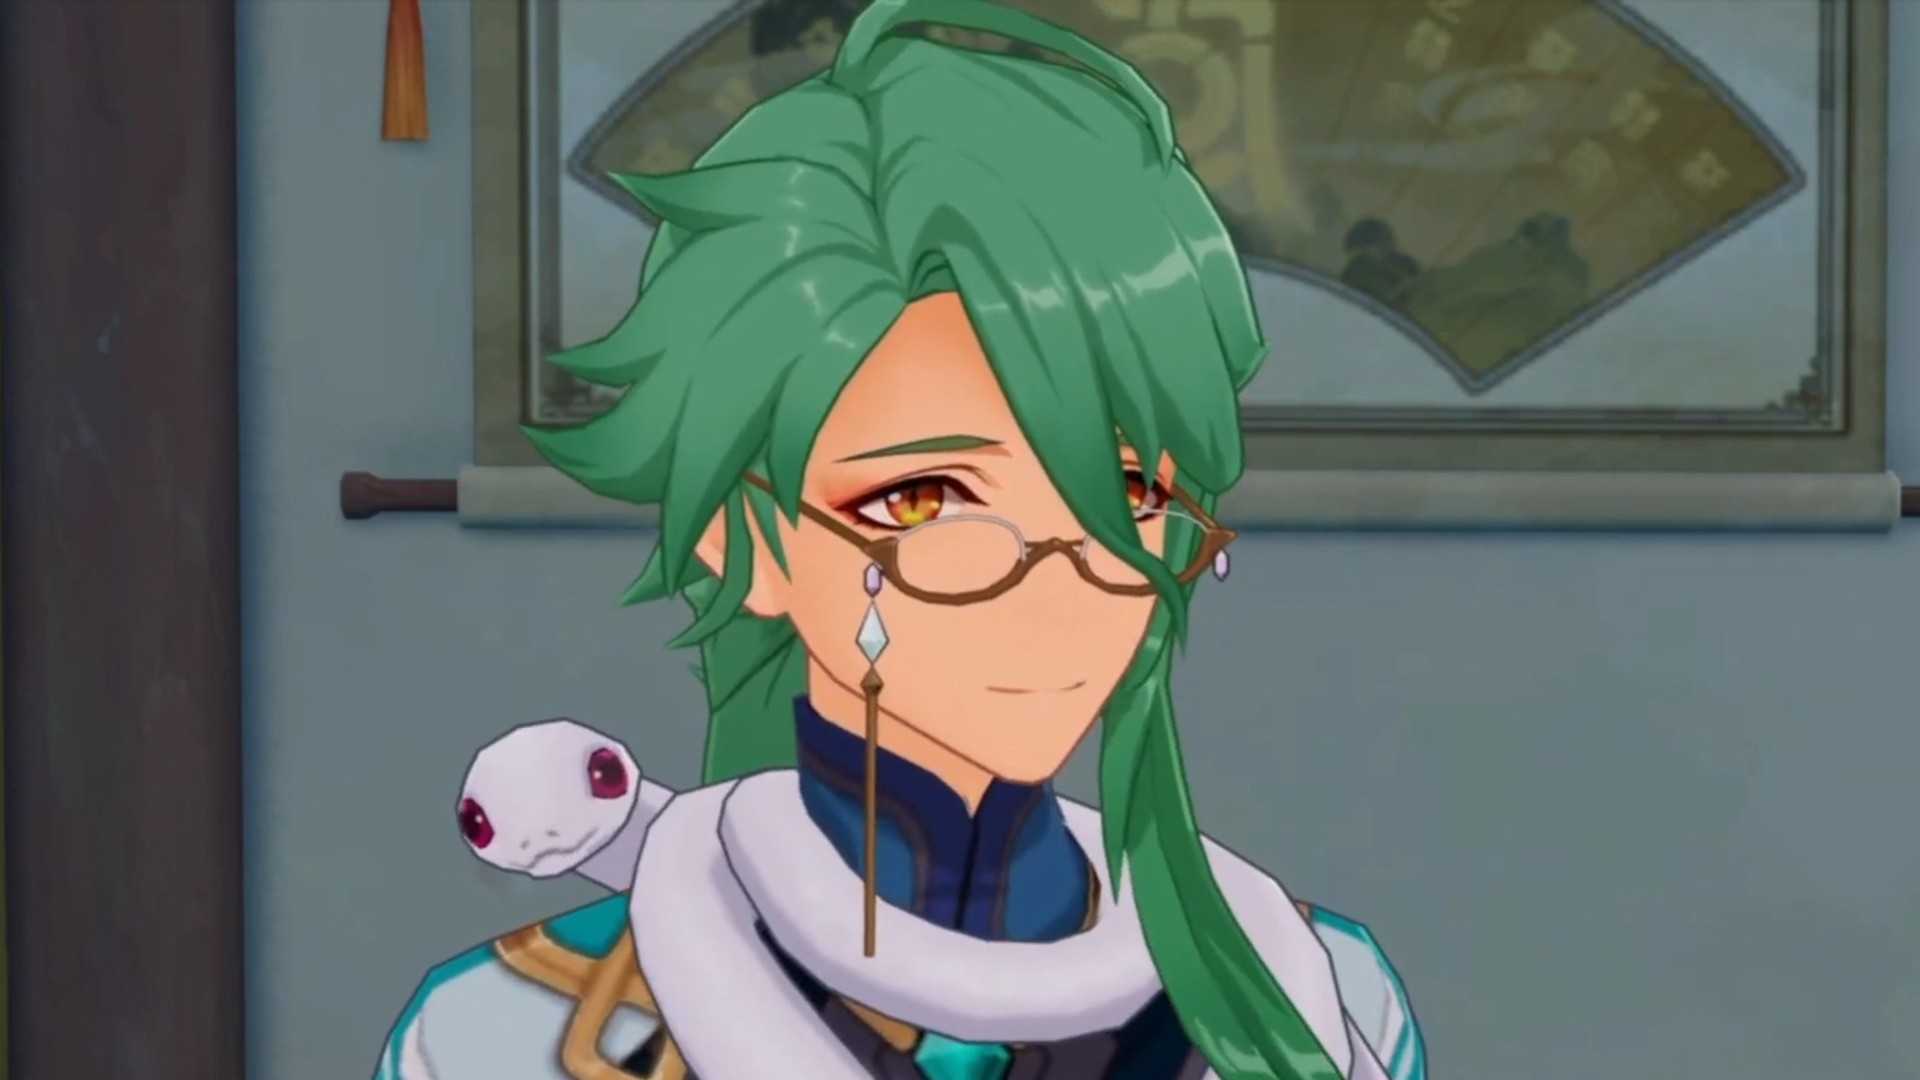 Karakter baru Genshin Impact, Baizhu, mengenakan kacamata dan mengenakan ular putih di lehernya